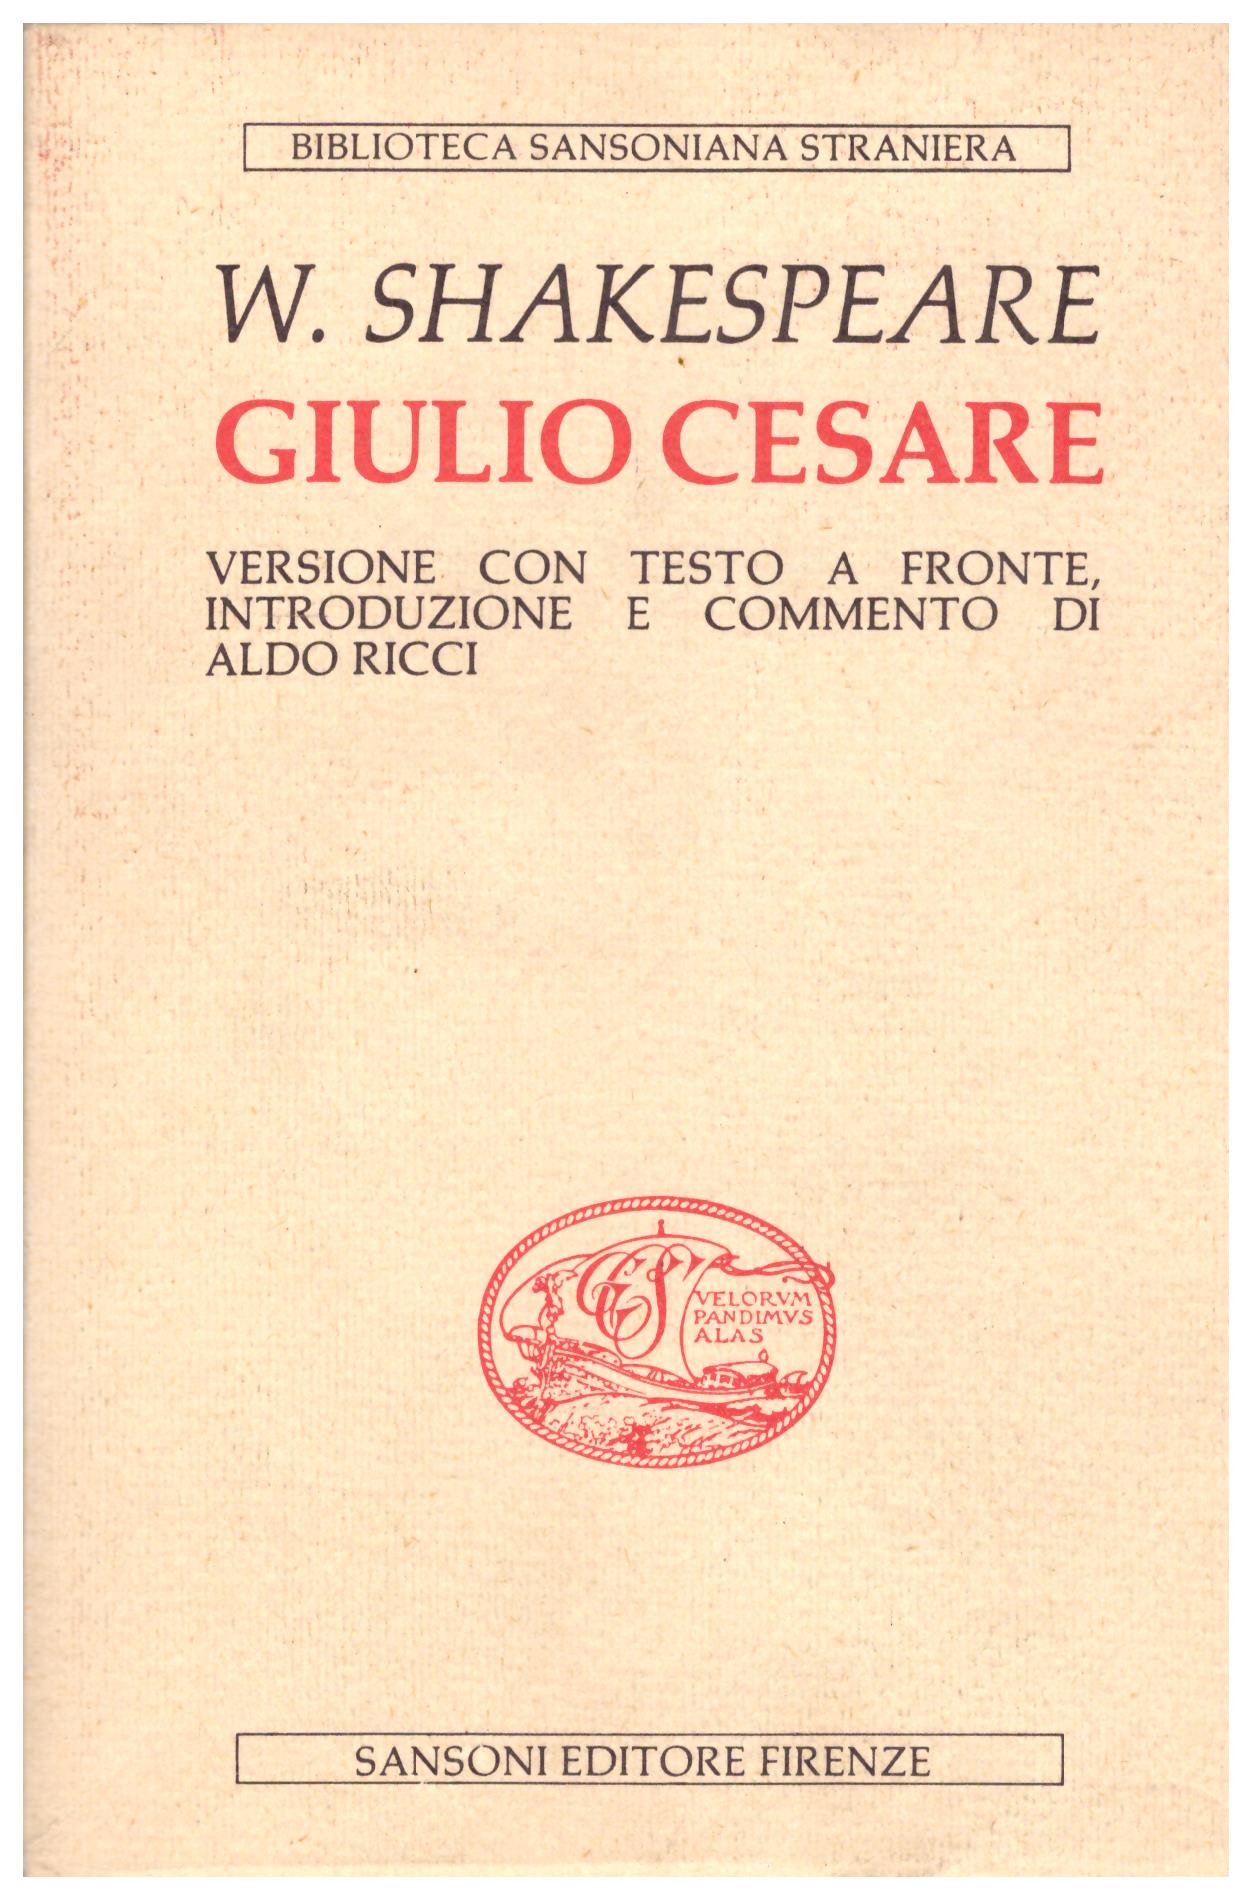 Titolo: Giulio Cesare Autore: W. Shakespeare Editore: Sansoni, 1985